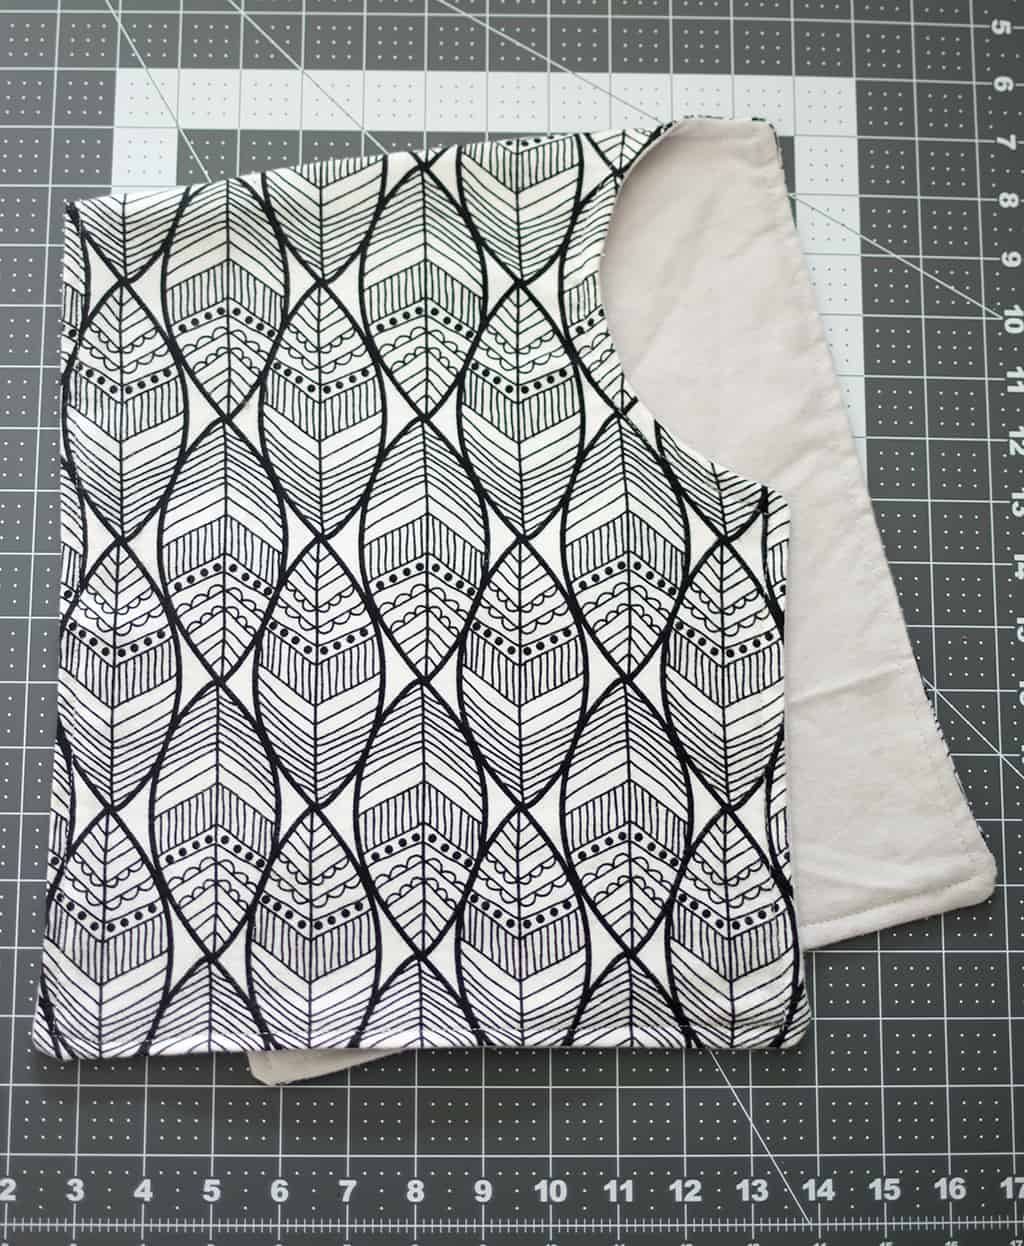 How to Sew a Contoured Burp Cloth